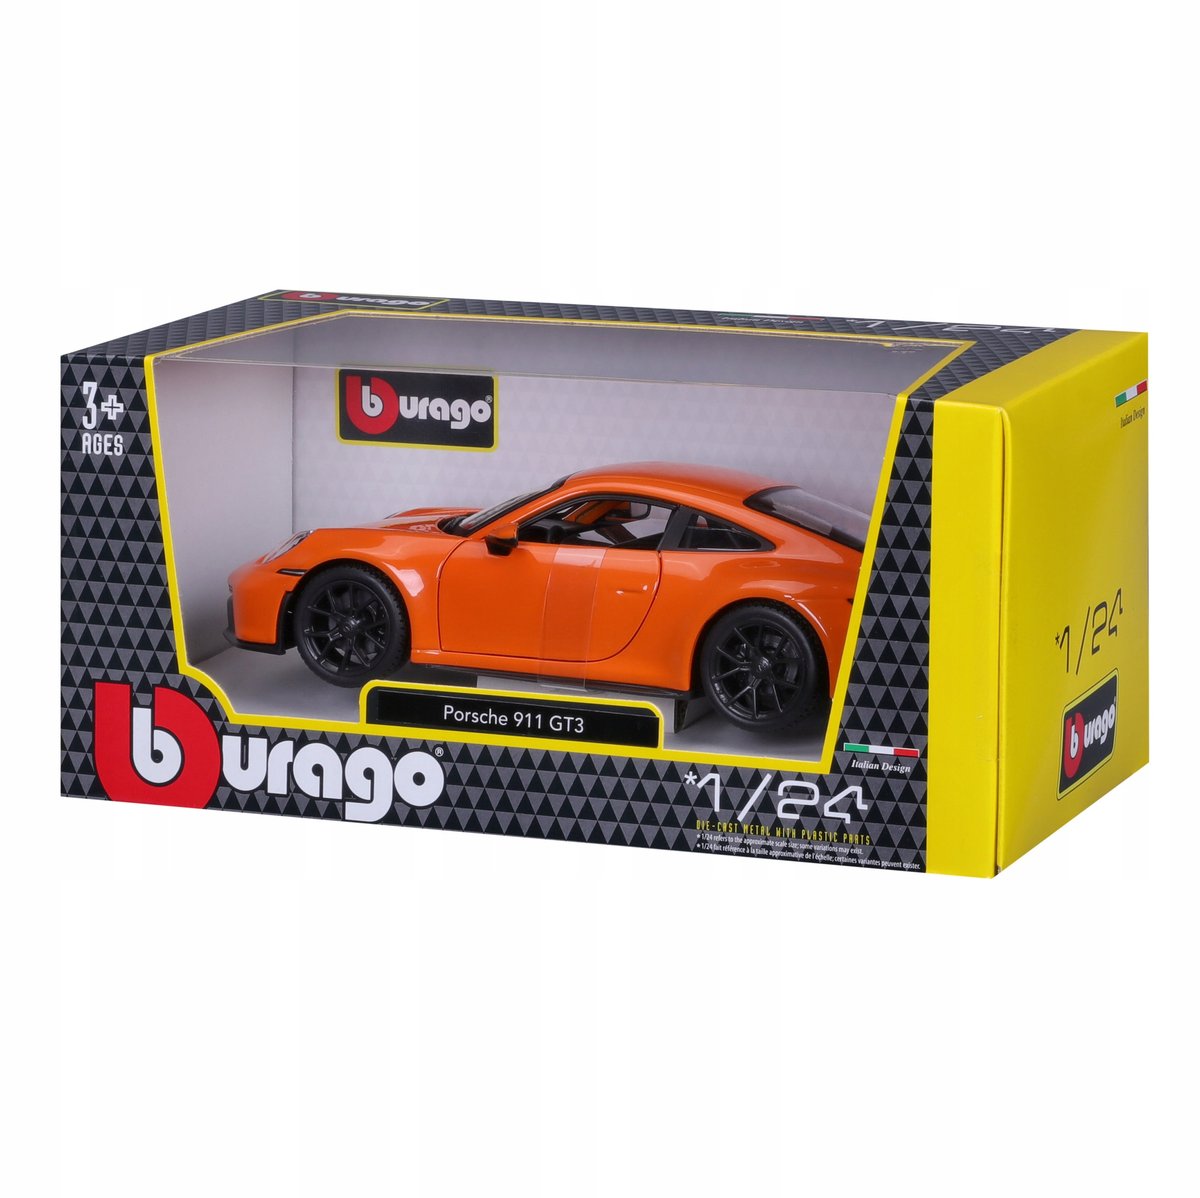 PORSCHE 911 GT3 1:24 POMARAŃCZOWY BBURAGO 18-21104